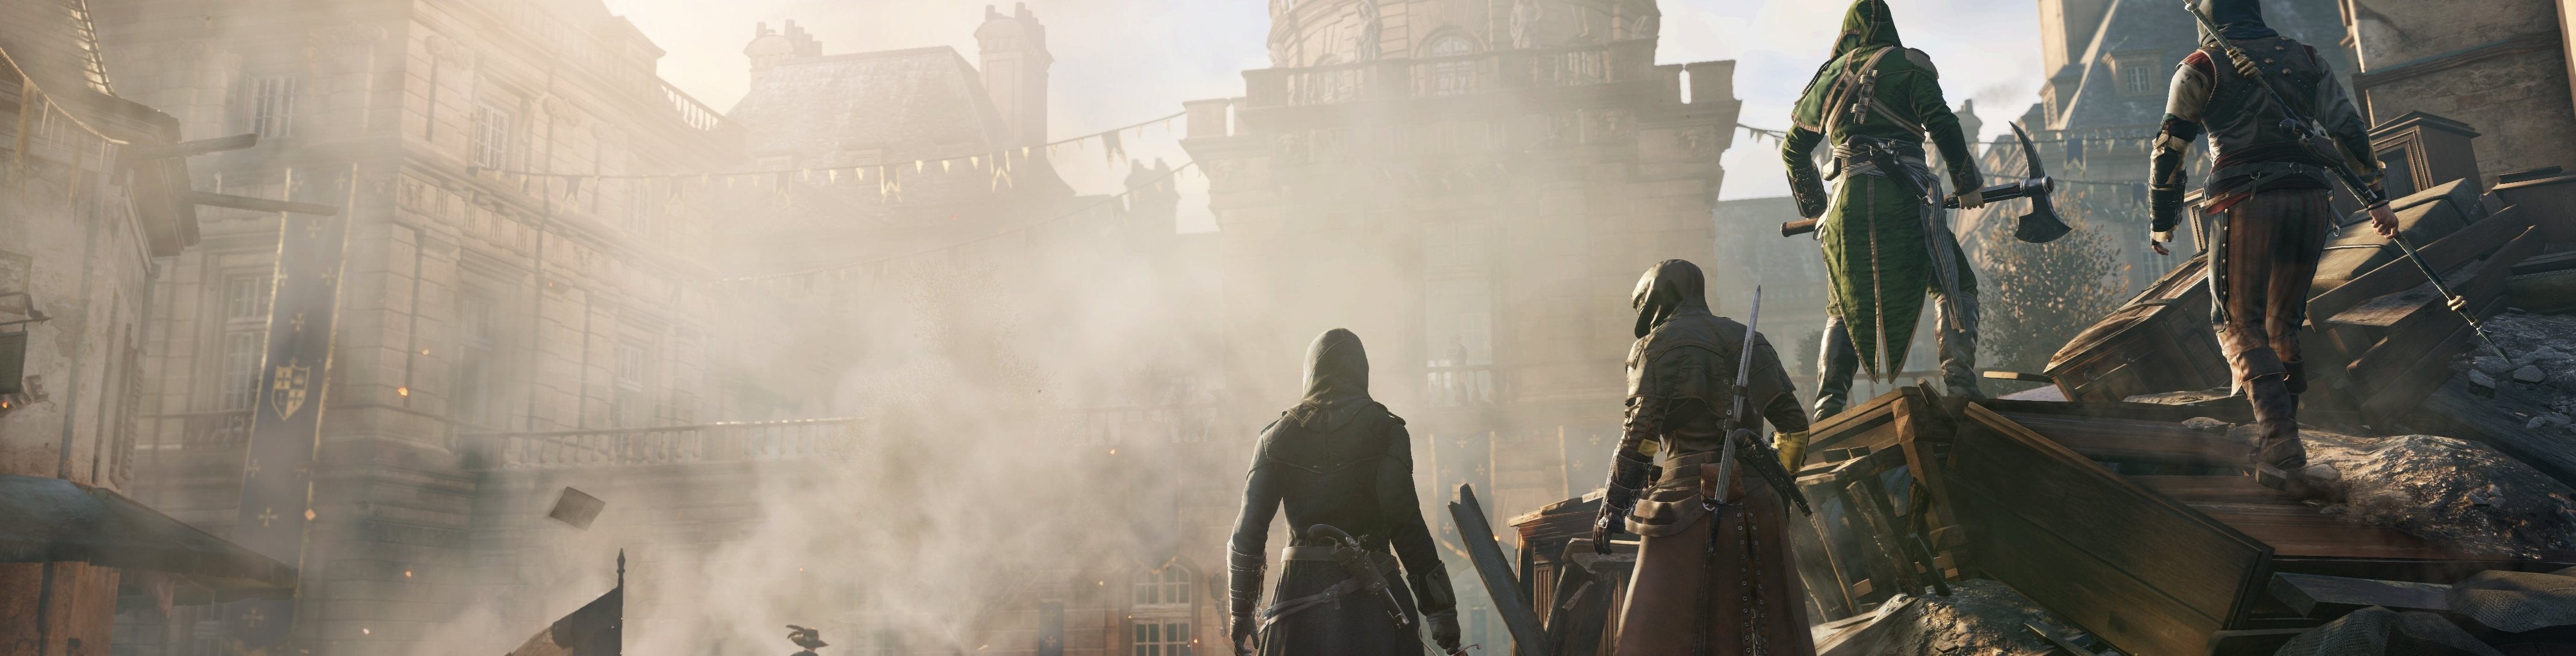 Afbeeldingen van Vier speler co-op bevestigd voor Assassin's Creed Unity